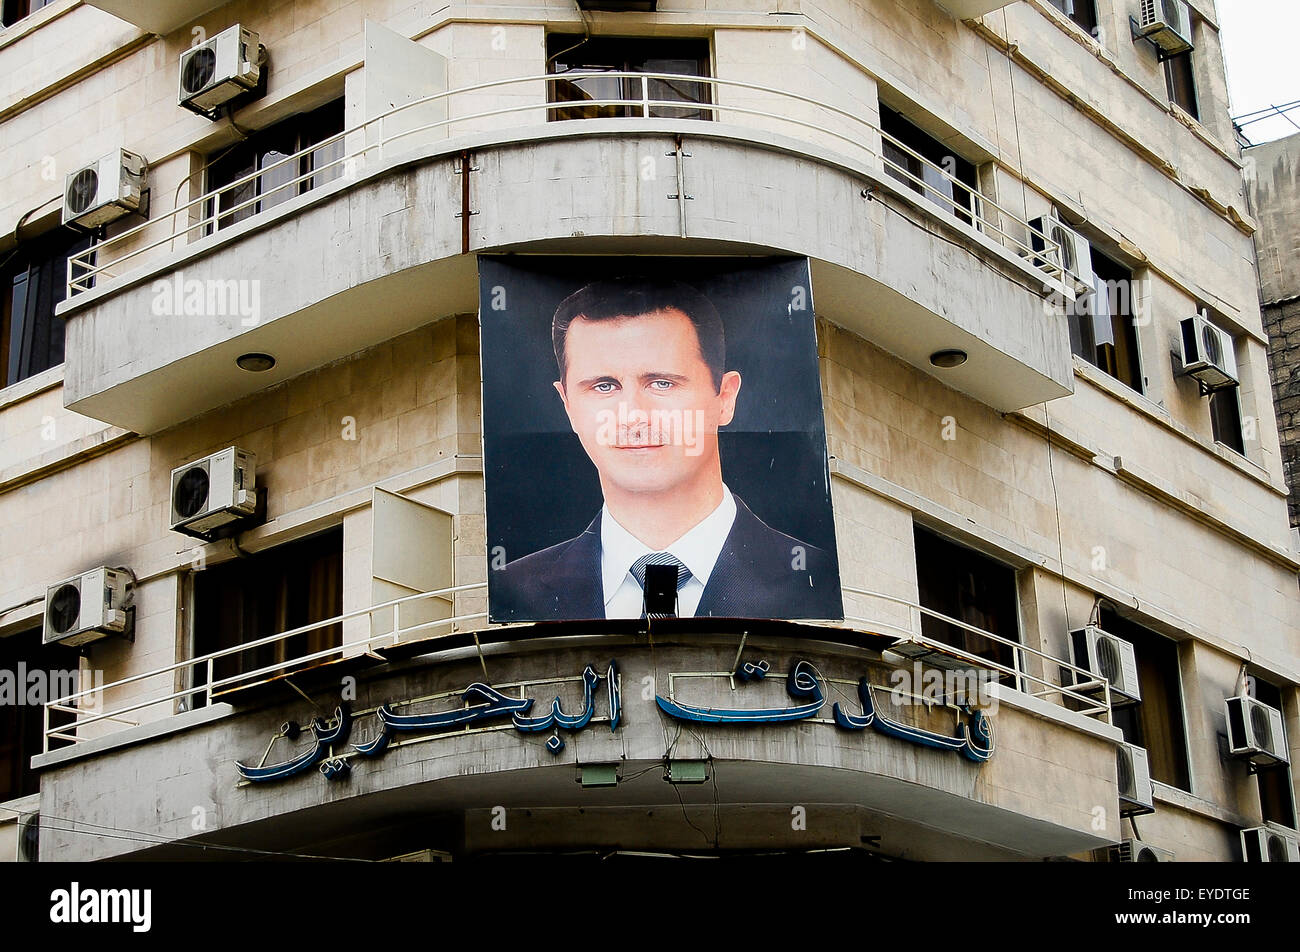 Photo du président Bachar al-Assad sur un bâtiment dans la capitale avant le déclenchement de la guerre civile - Damas - Syrie Banque D'Images